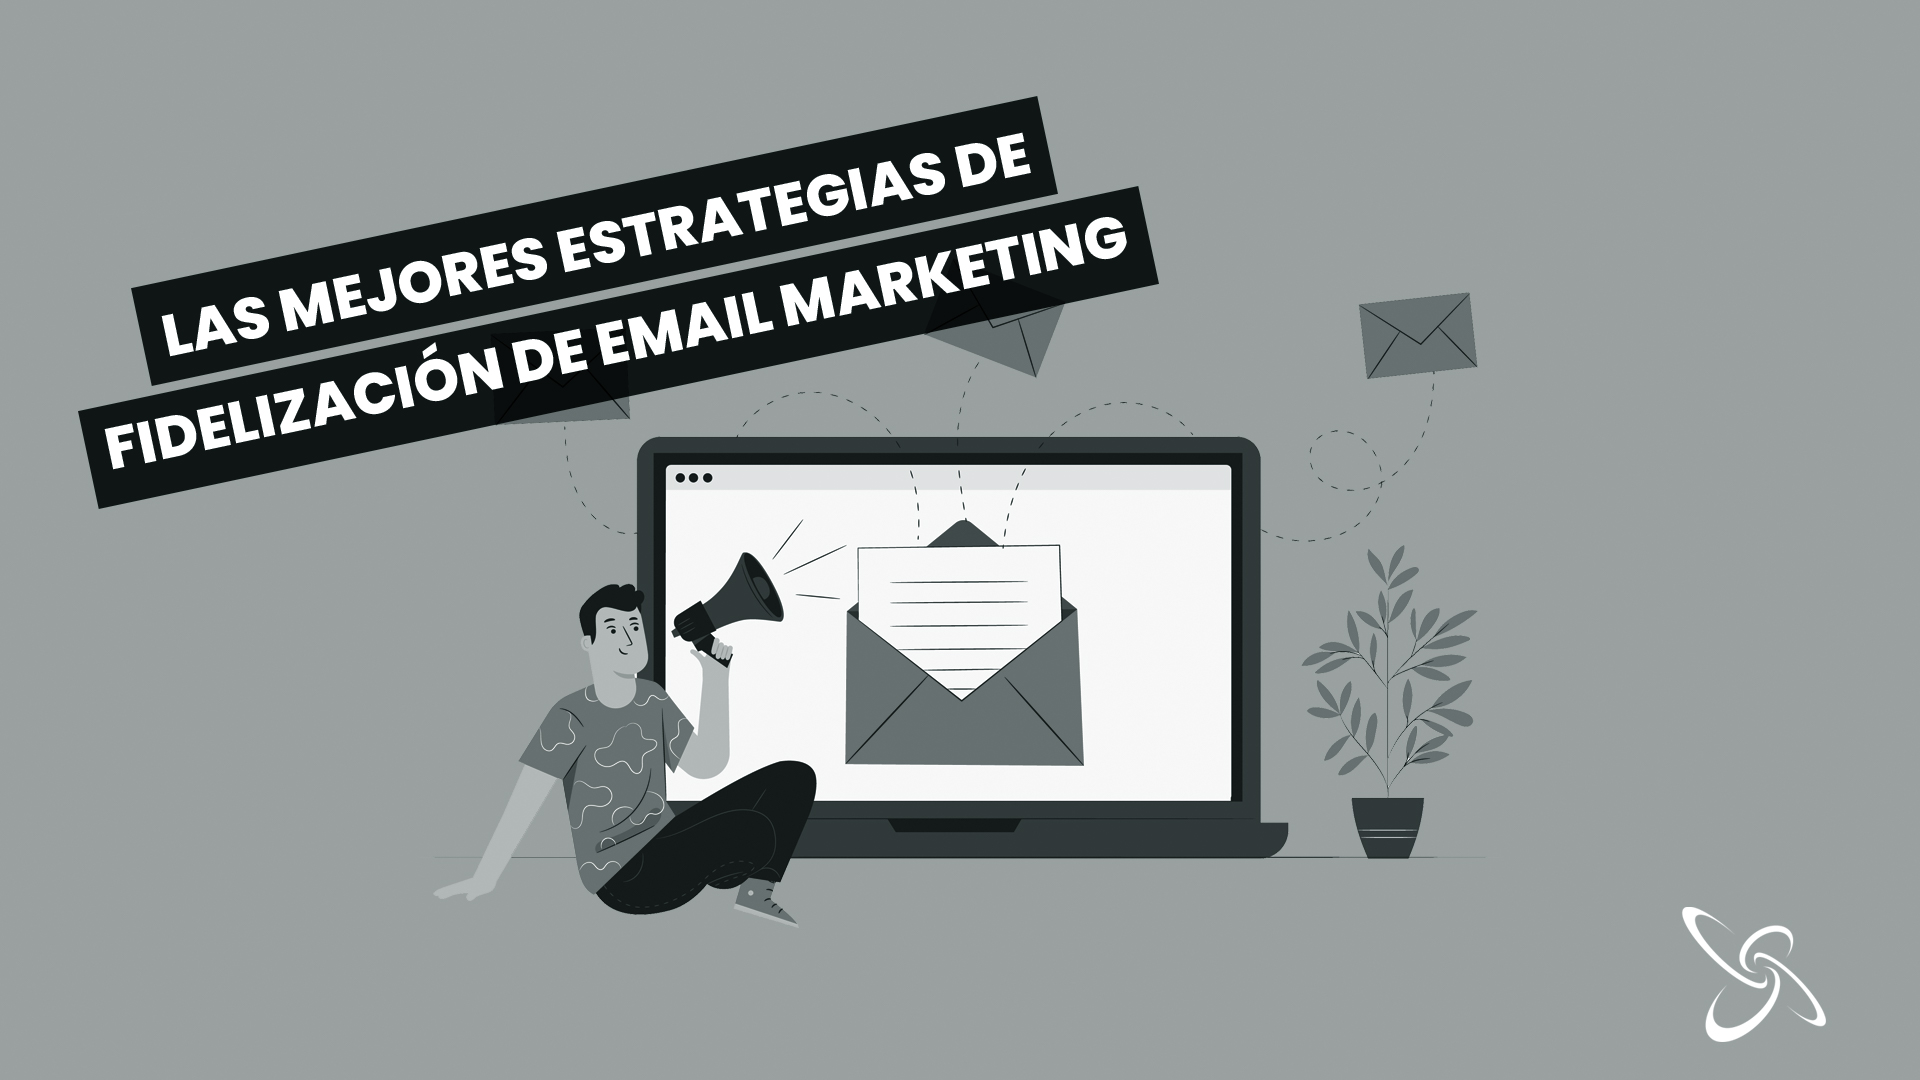 Las mejores estrategias de fidelización en email marketing